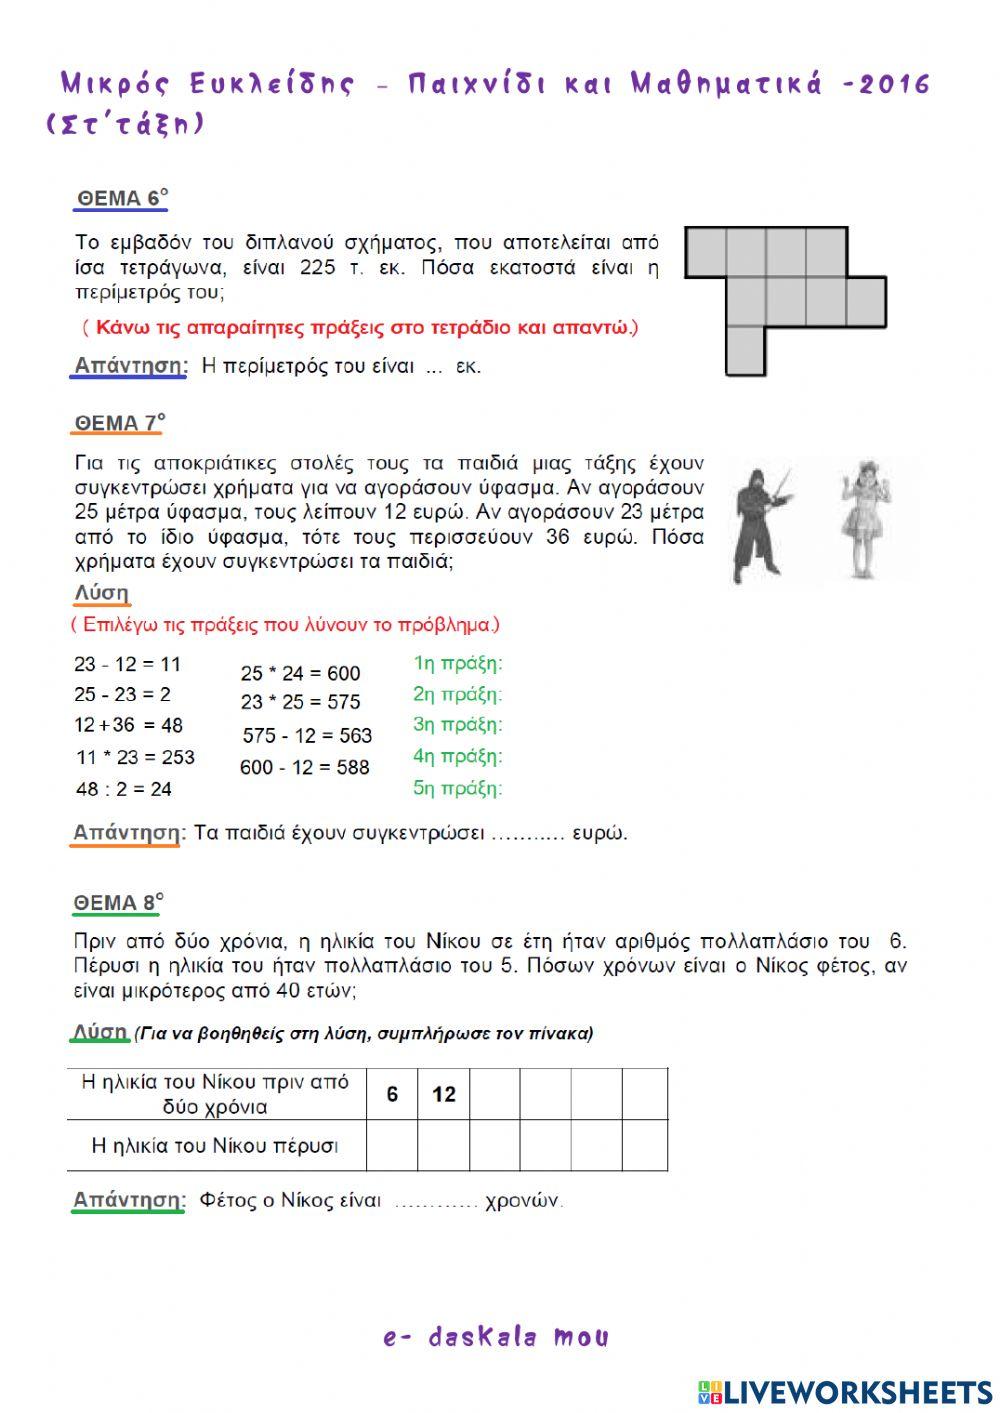 Μικρός Ευκλείδης - Παιχνίδι και Μαθηματικά 2016 worksheet | Live Worksheets